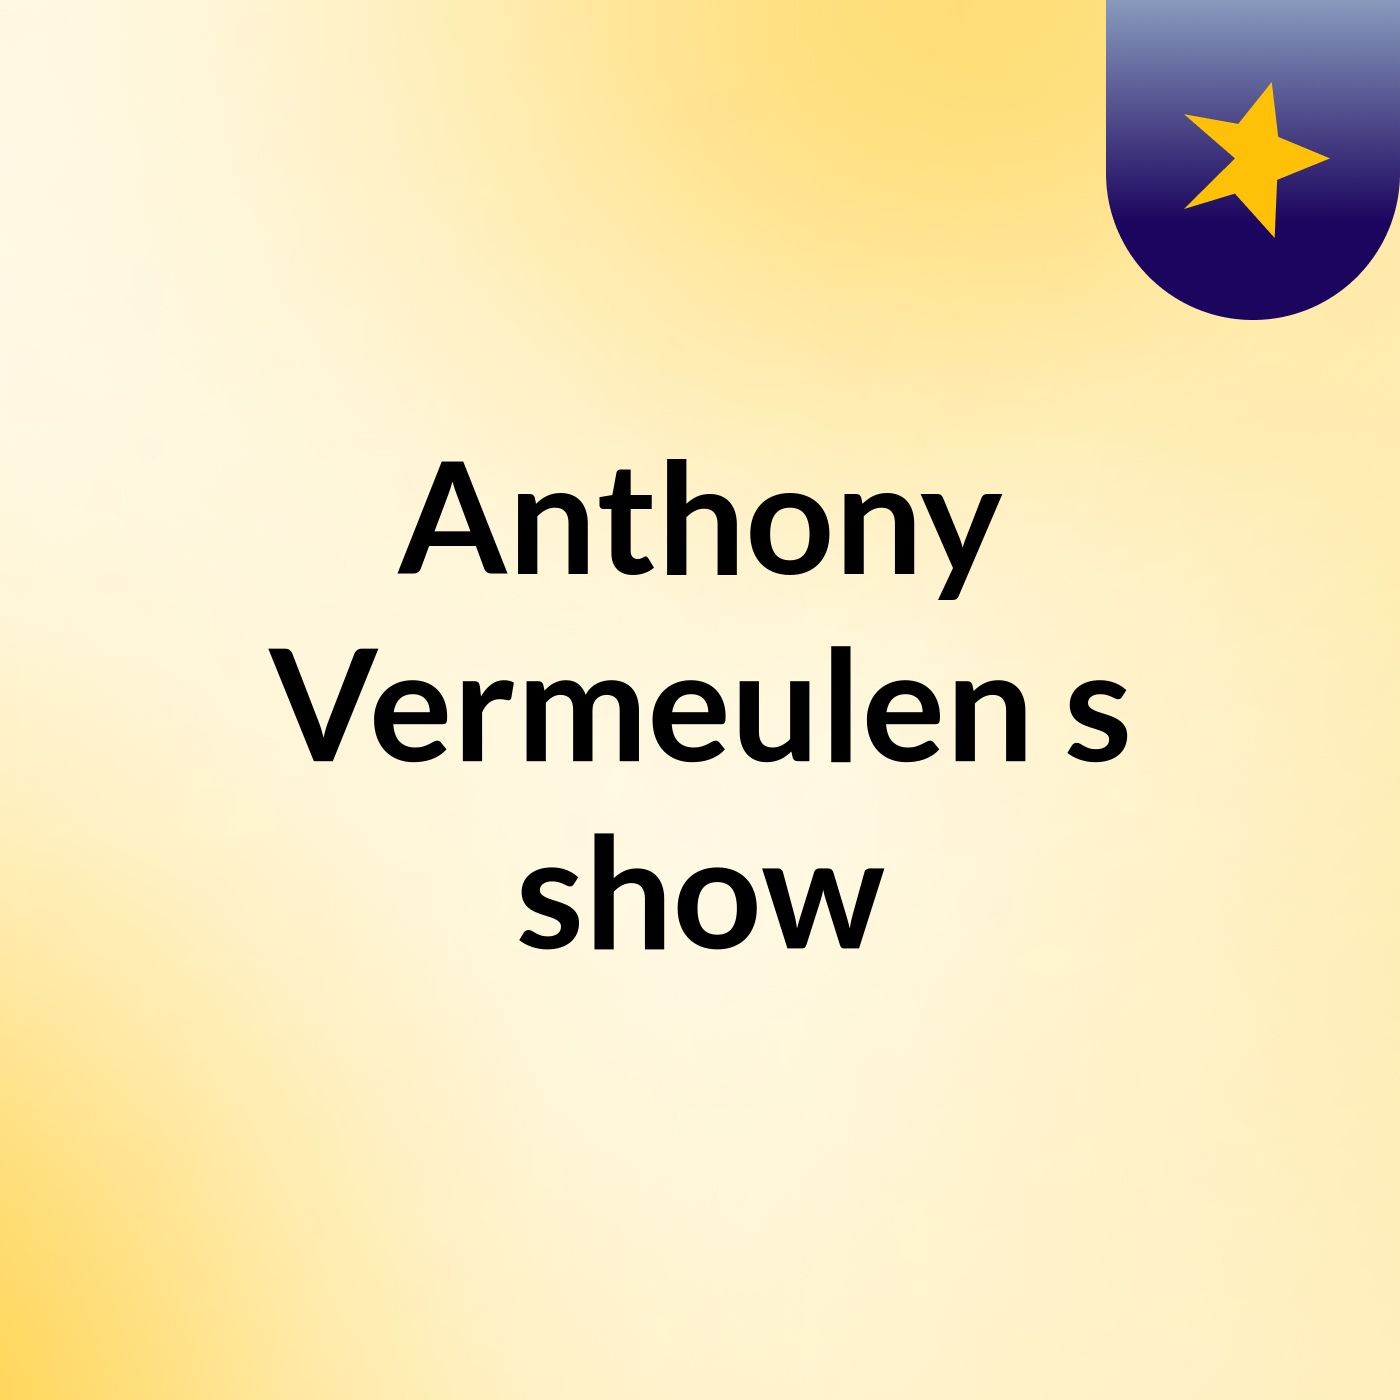 Anthony Vermeulen's show